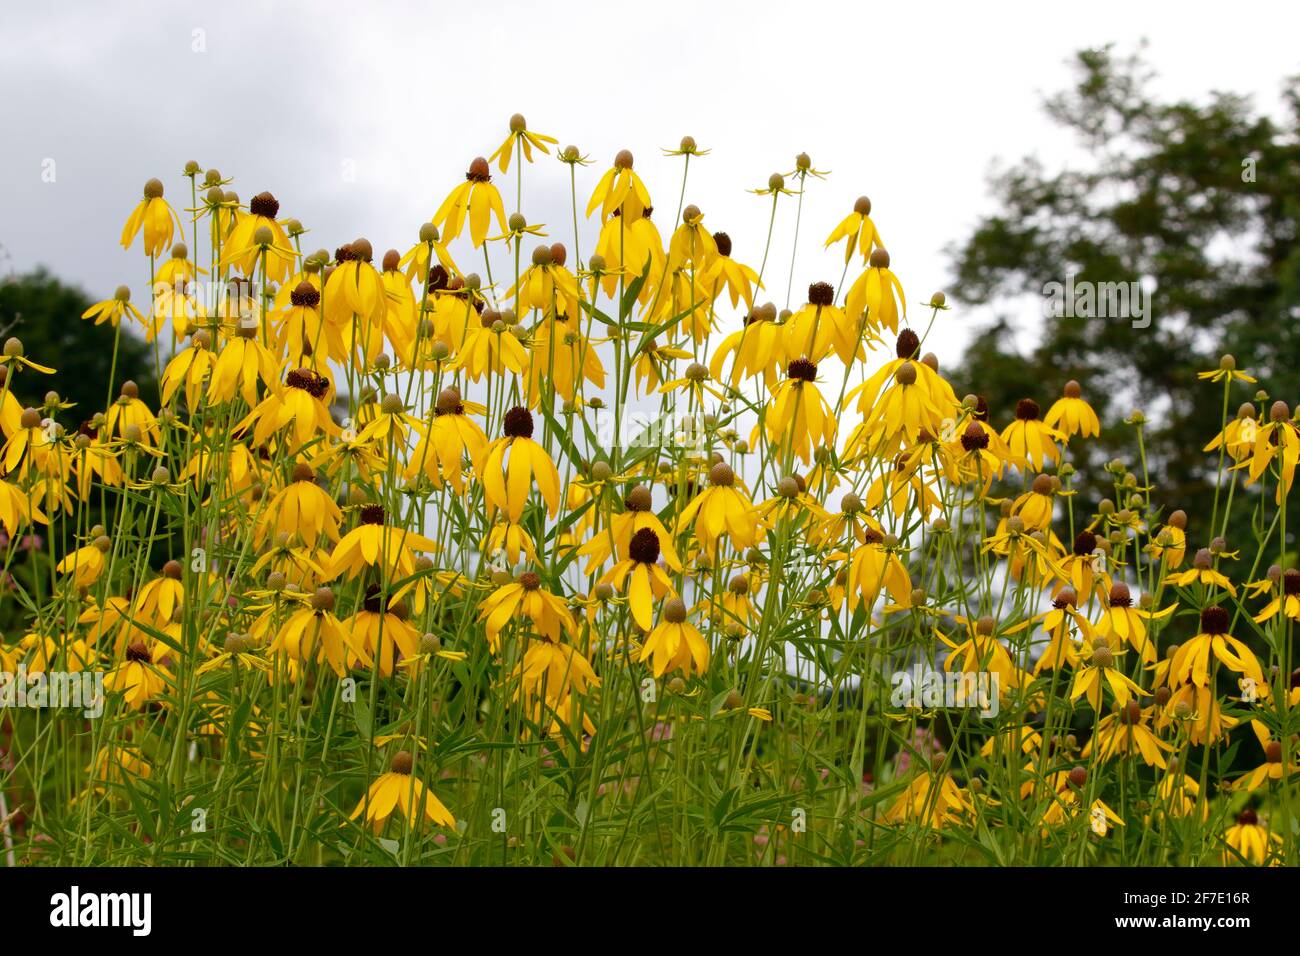 Schwarzäugige Susans, Rudbeckia hirta, wachsen auf einem Feld. Stockfoto